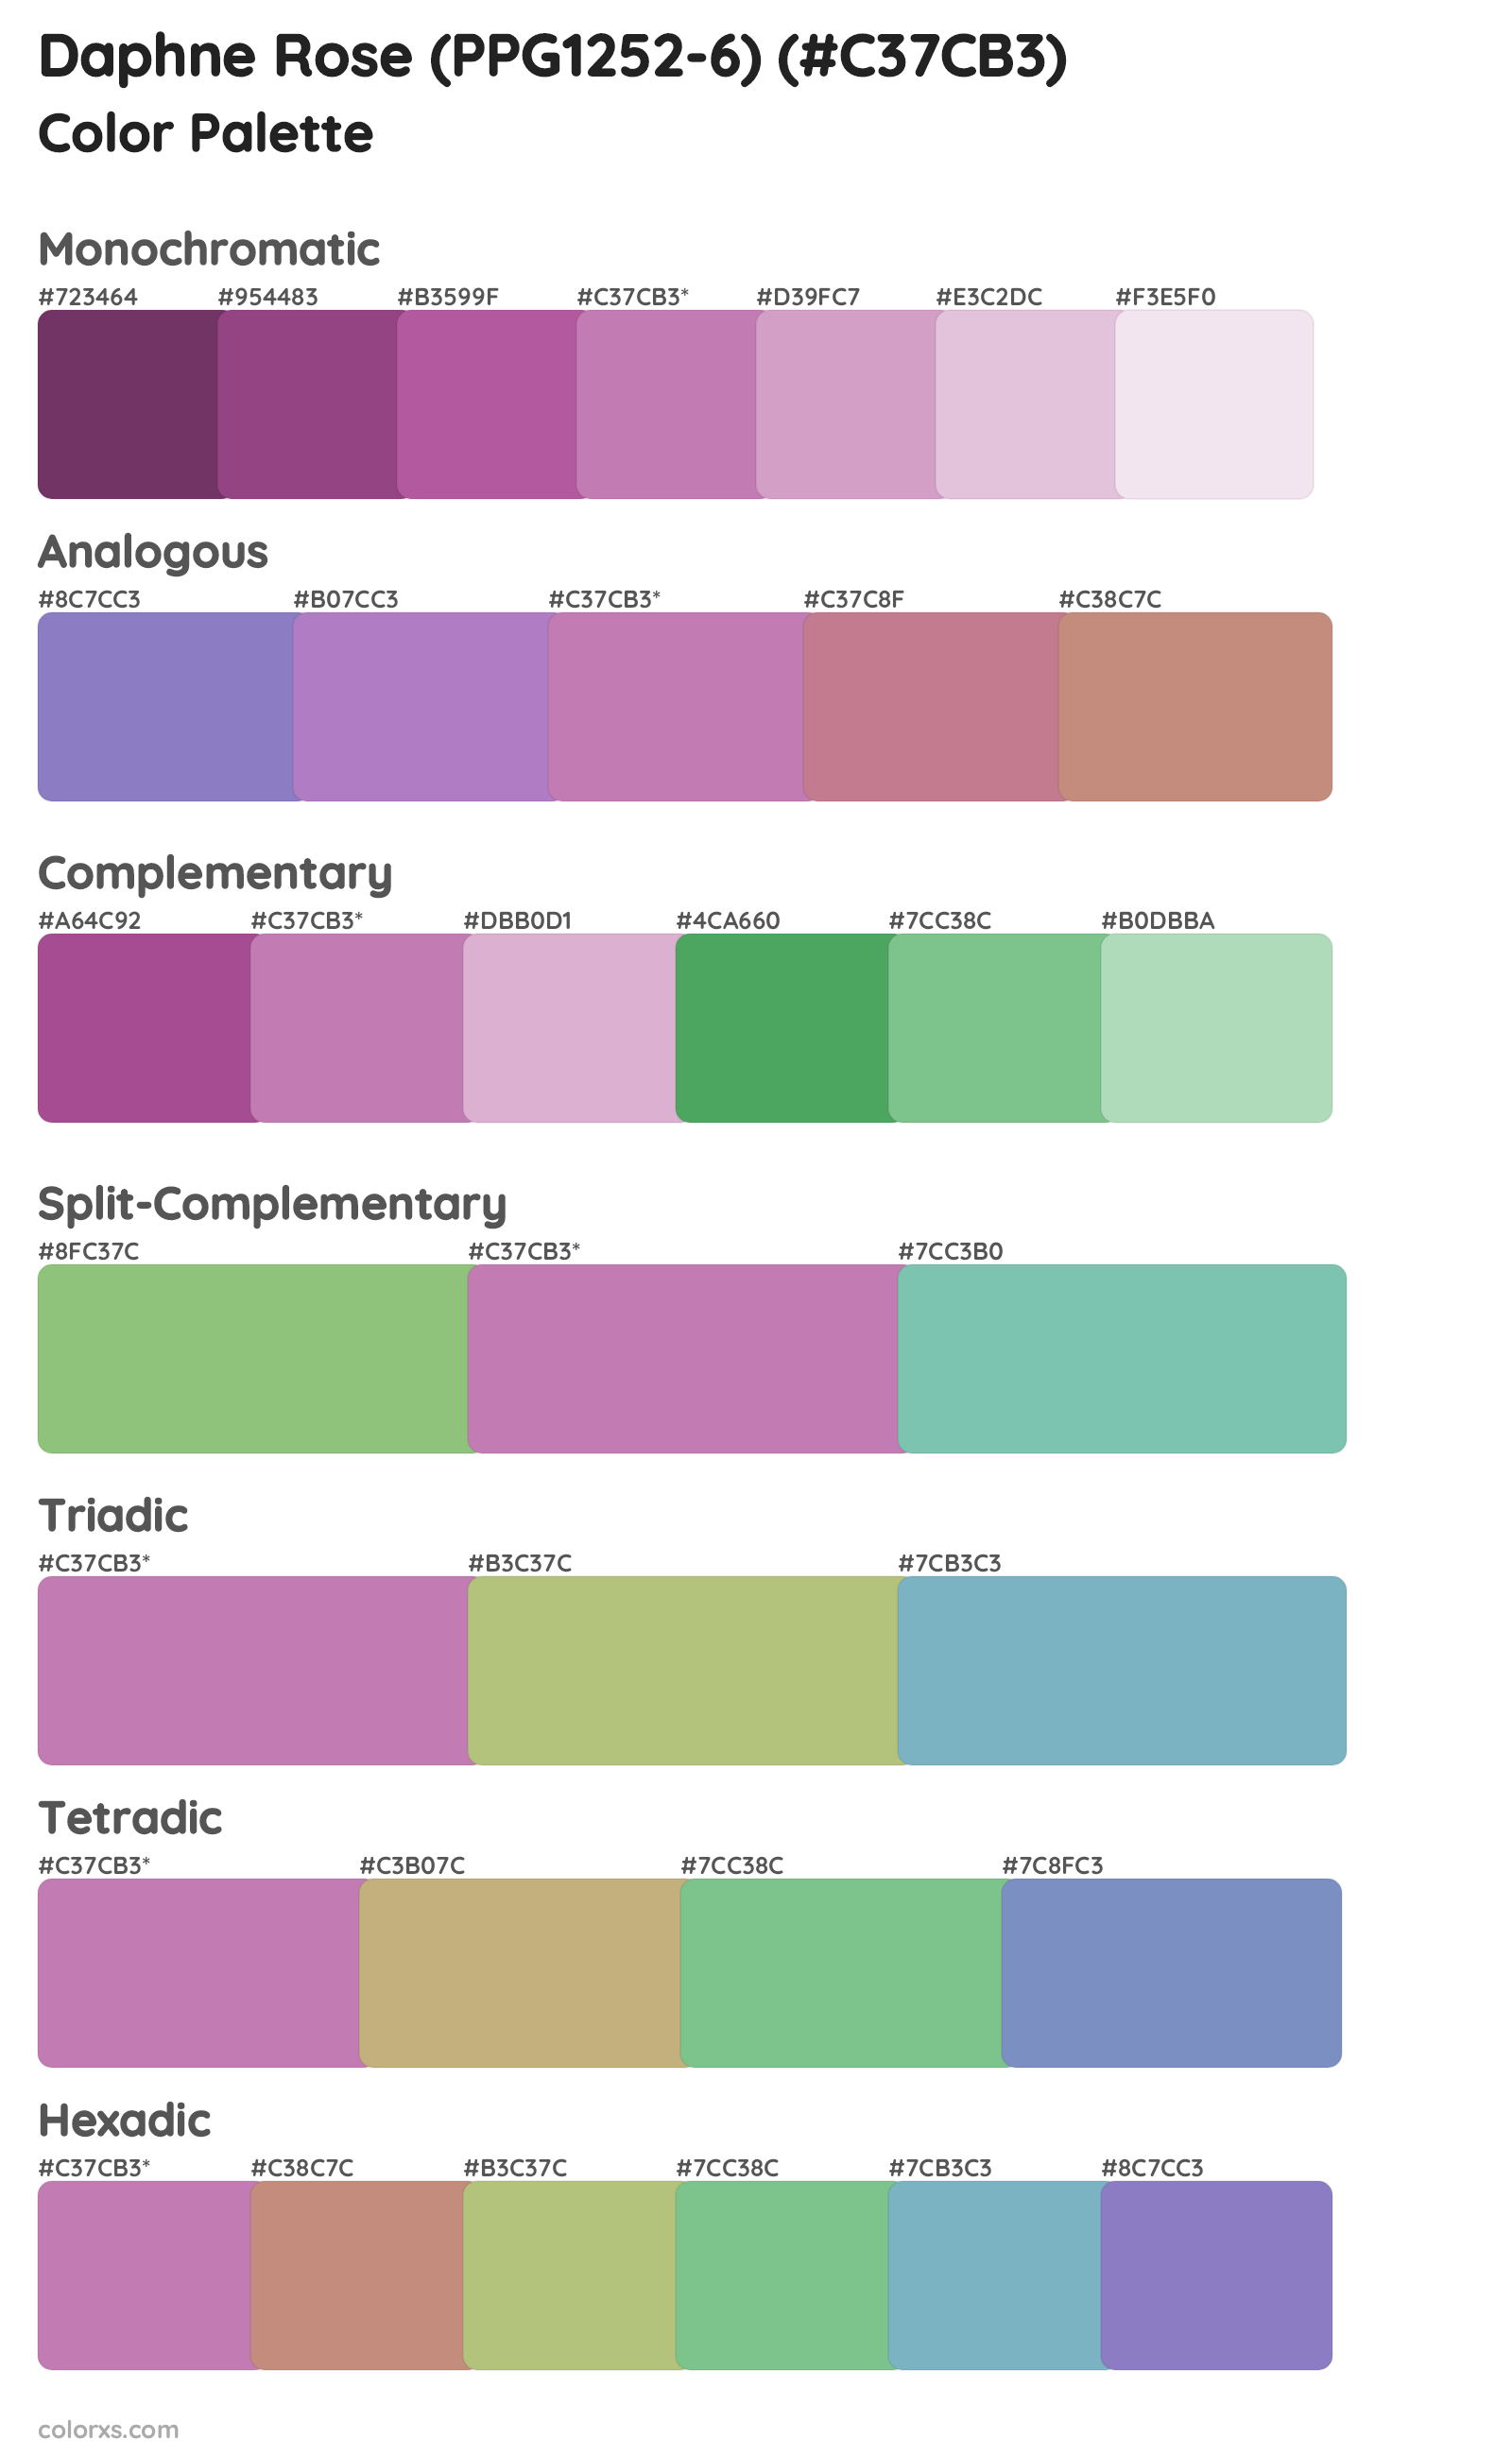 Daphne Rose (PPG1252-6) Color Scheme Palettes